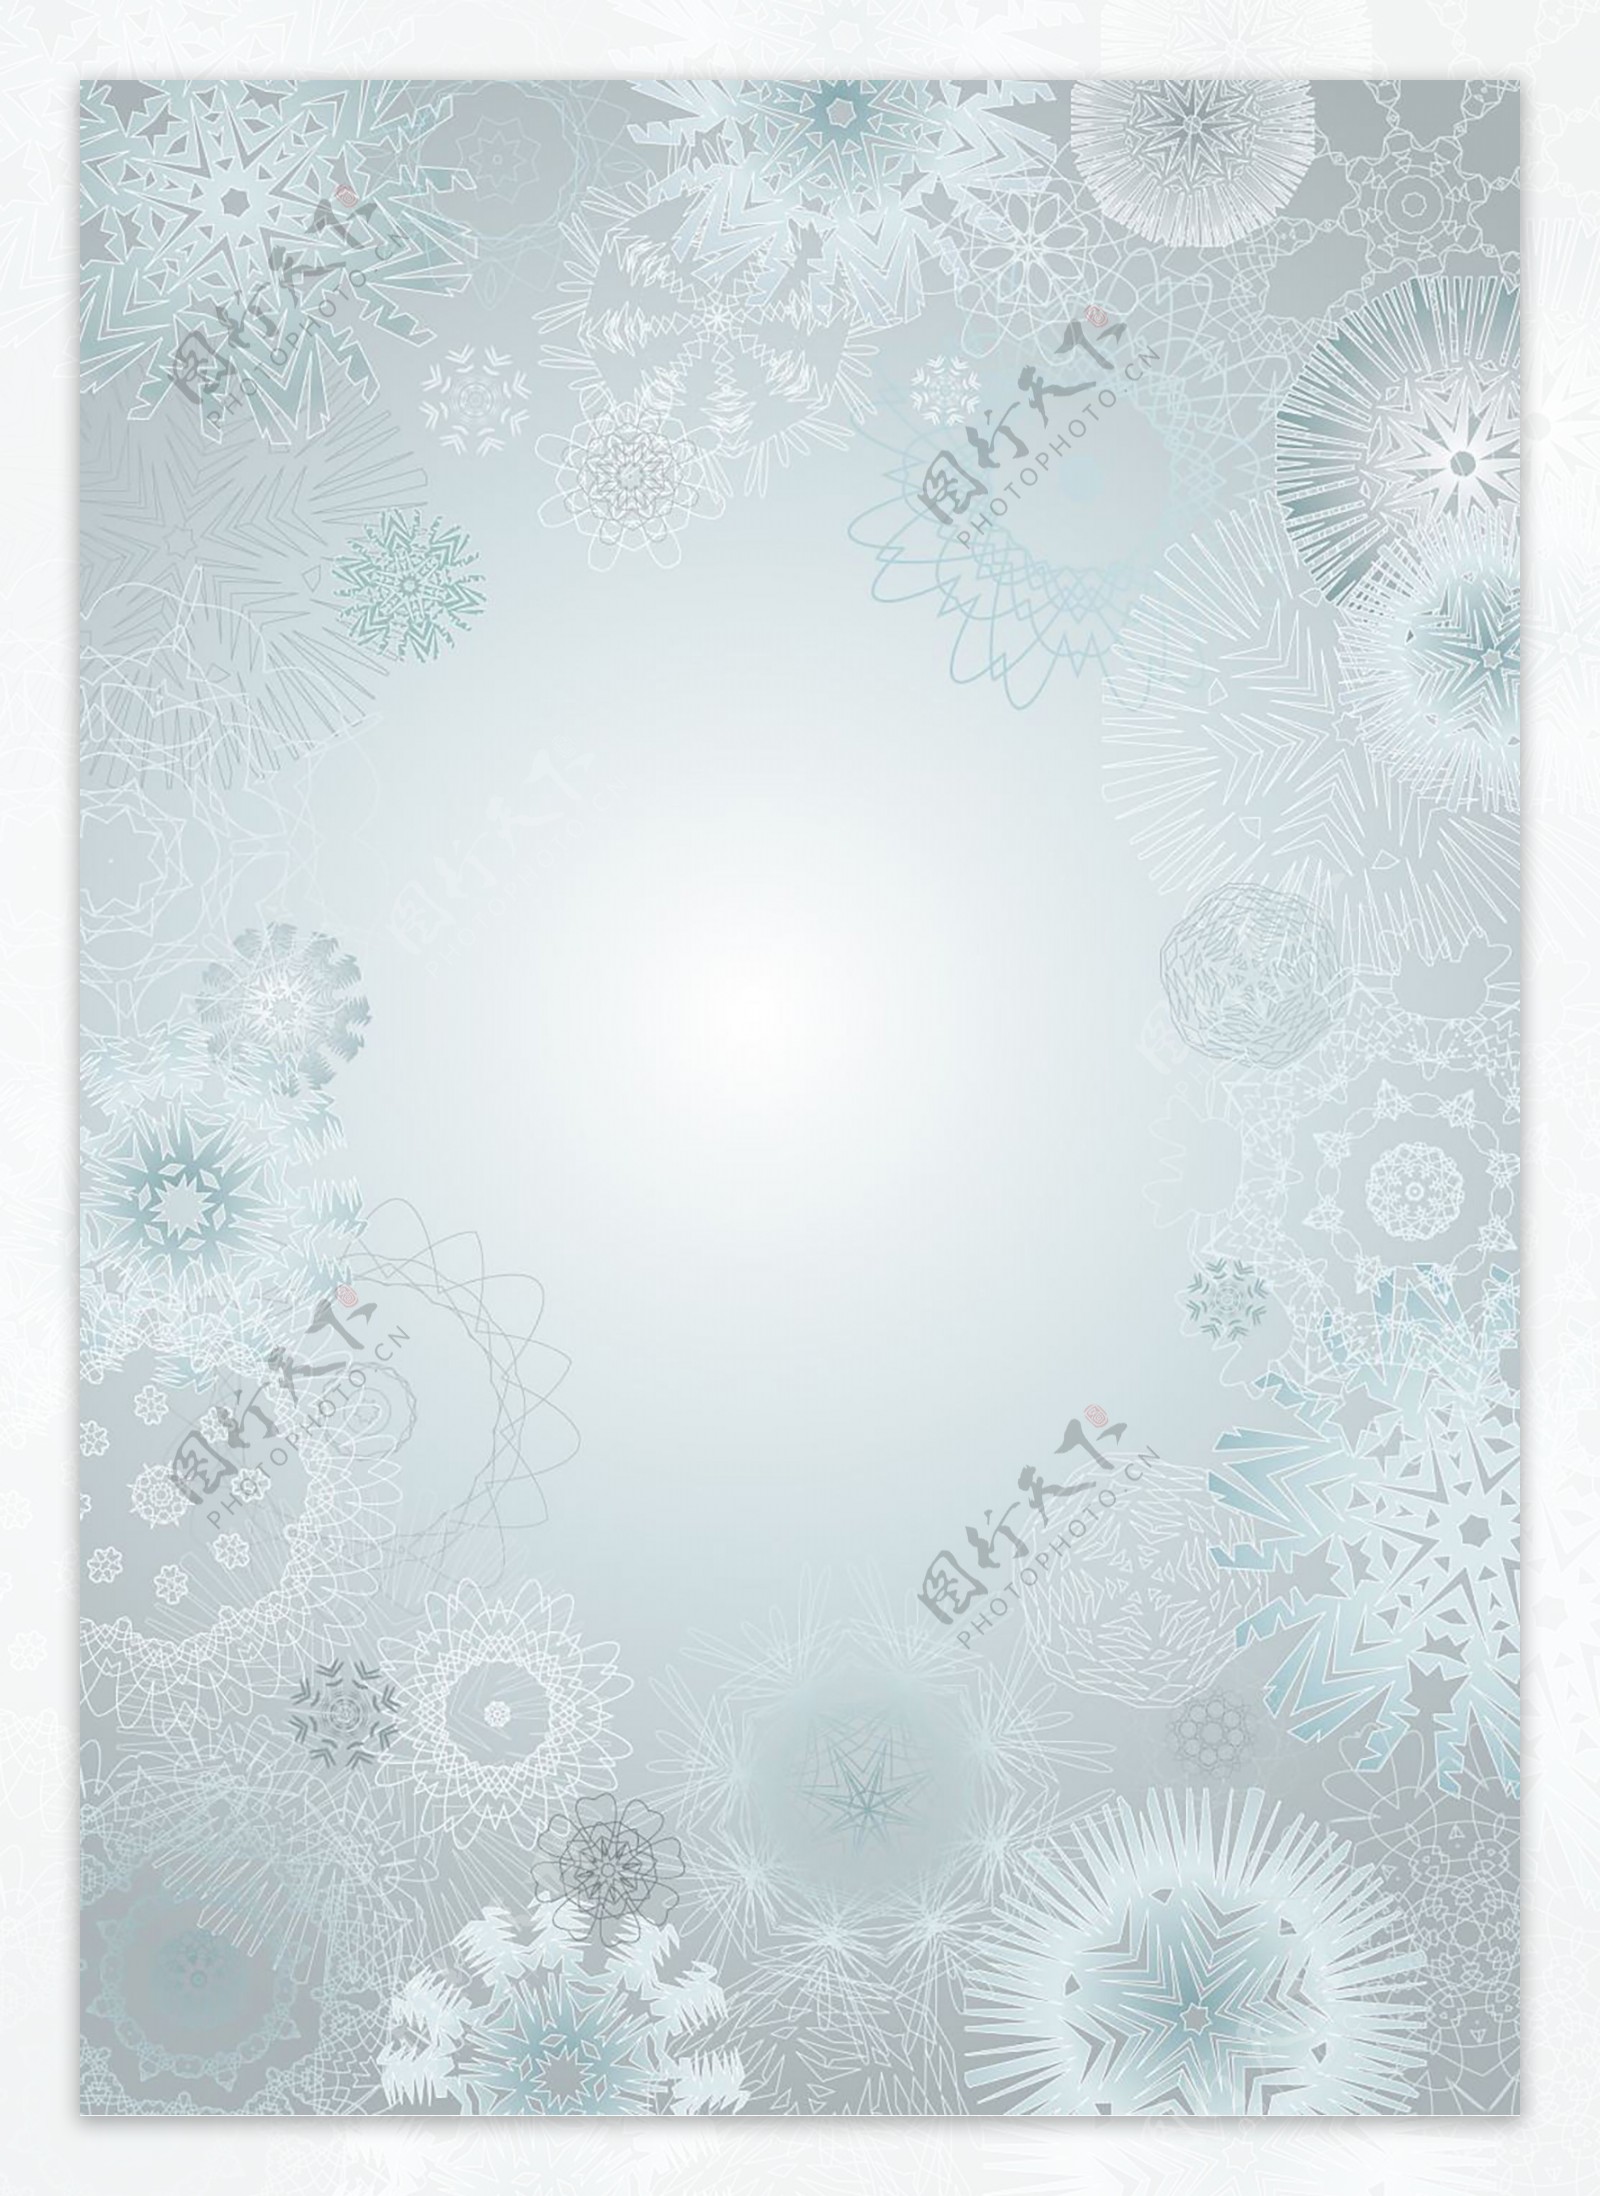 白色透明冰晶雪花图4